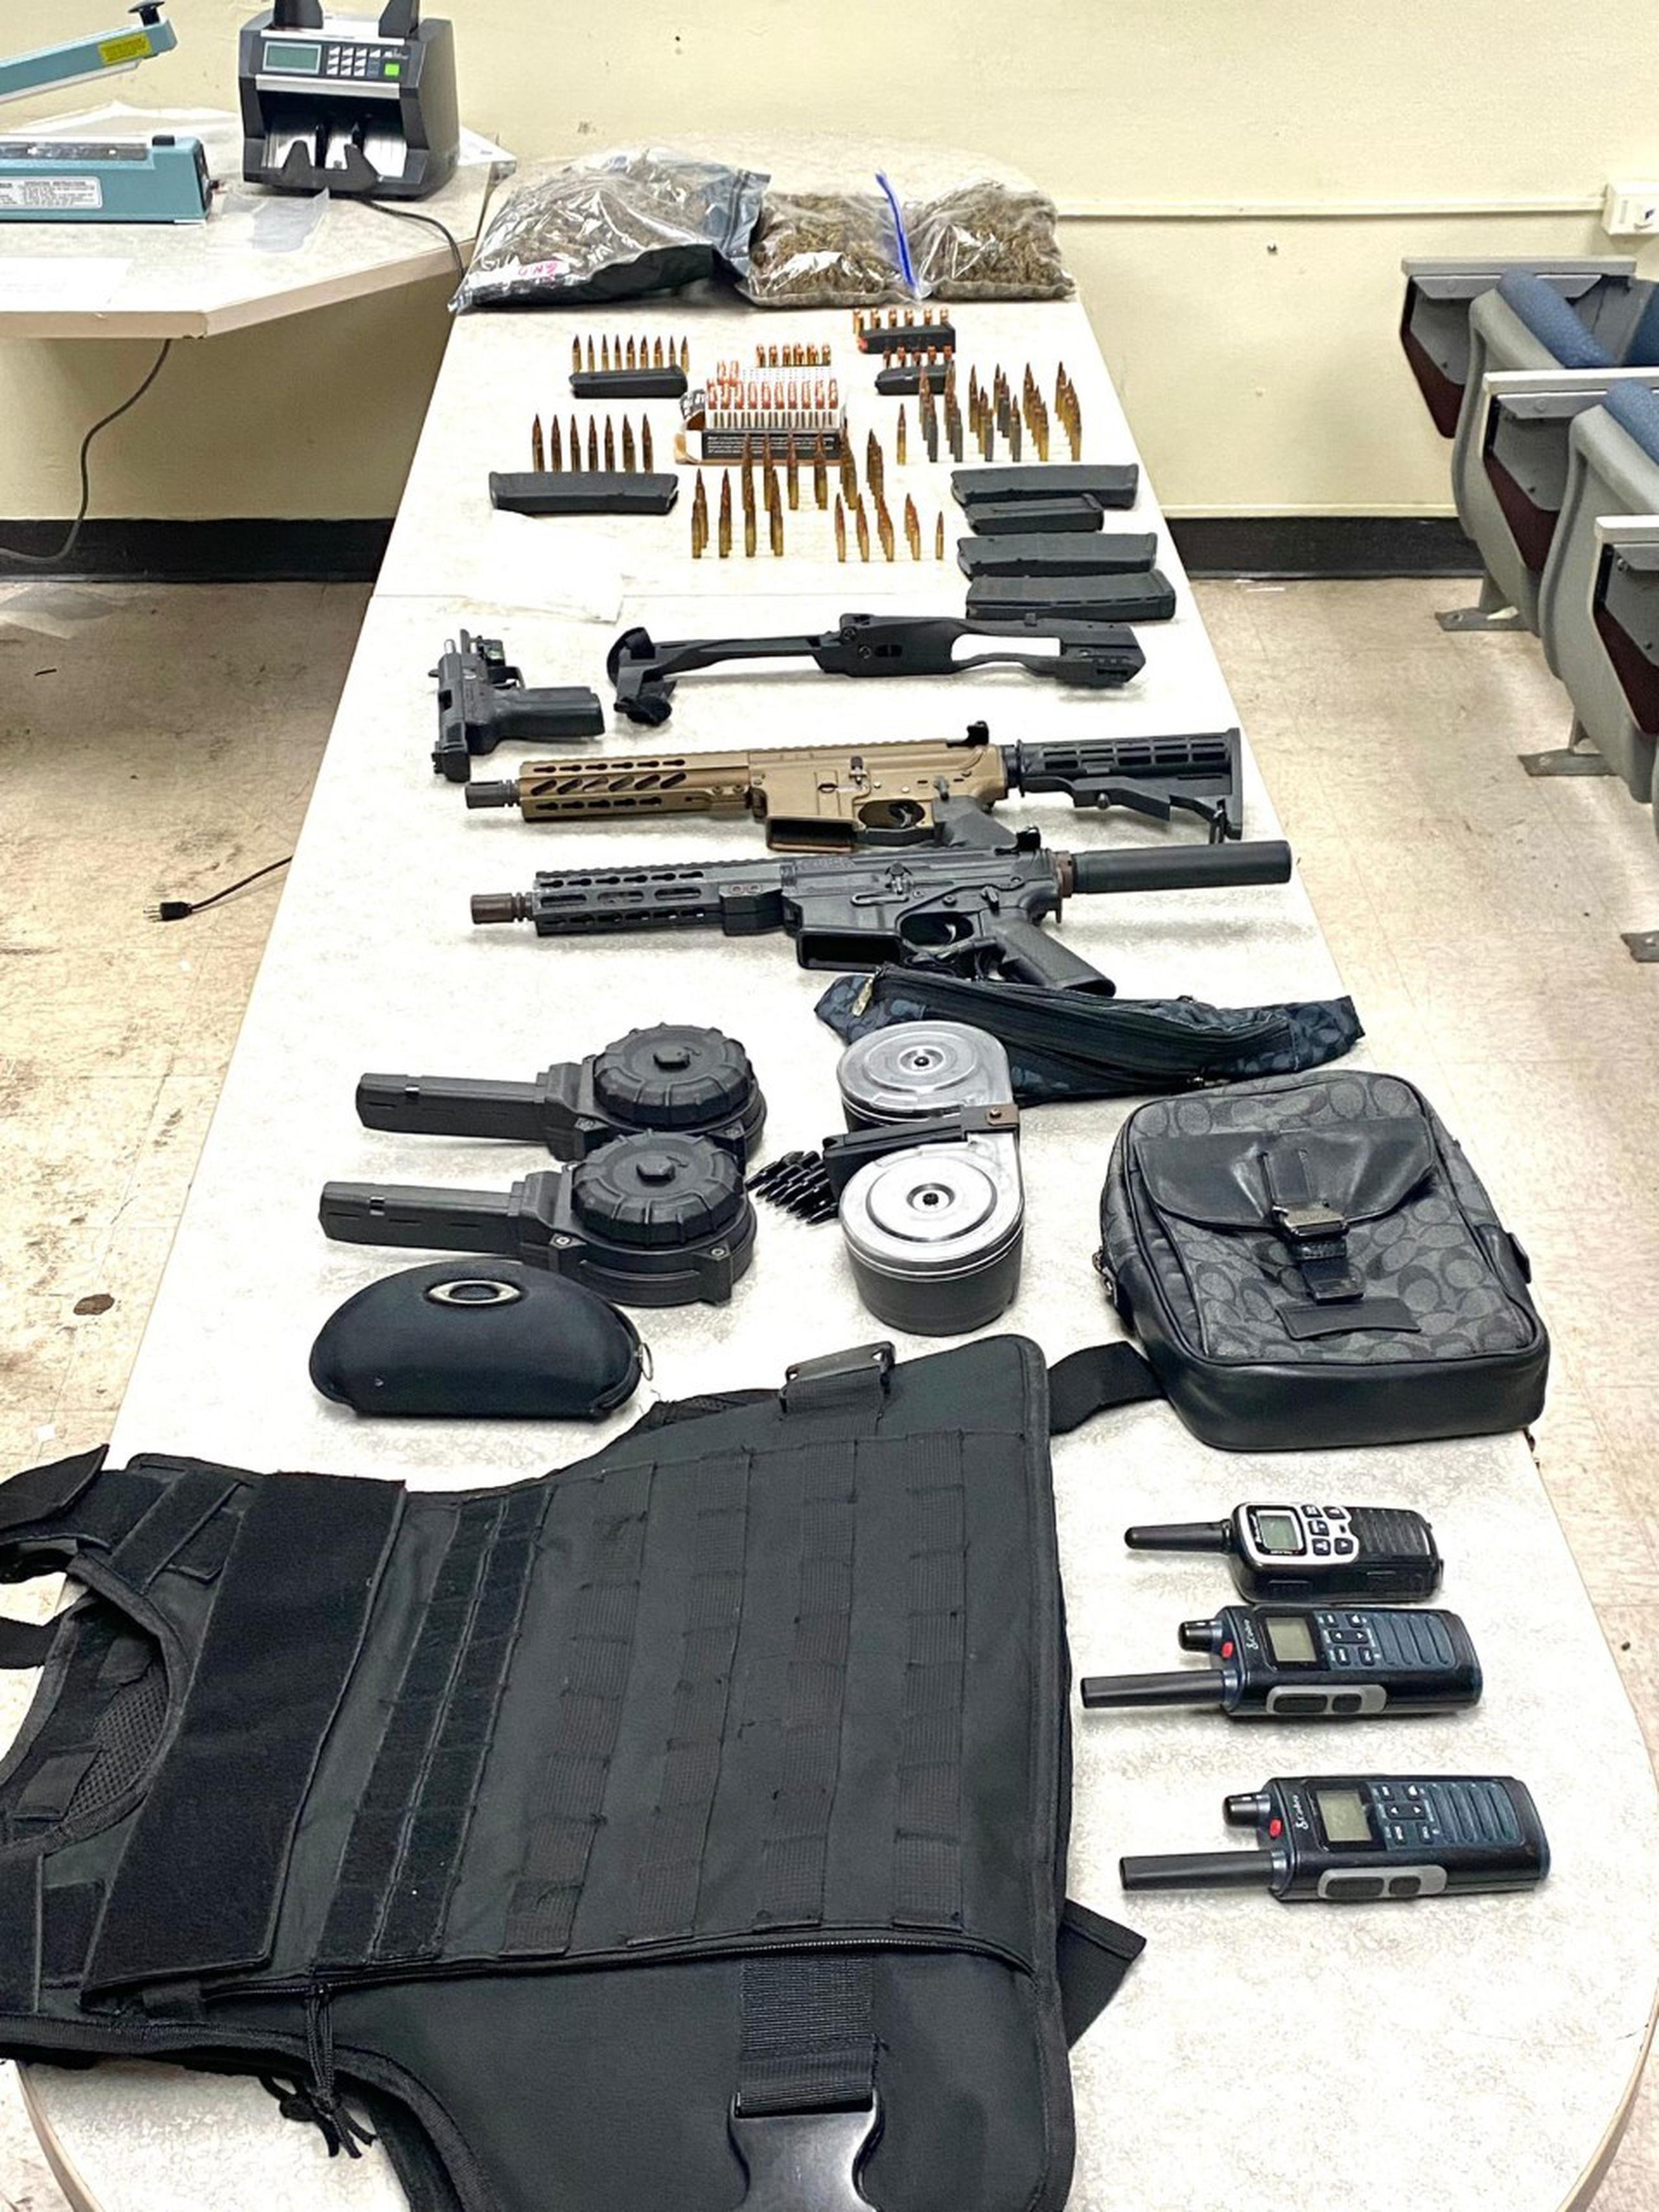 En el residencial Campo Alegre, en Manatí, ocuparon dos rifles, una pistola, 12 cargadores, 248 municiones de diferentes calibres, un chaleco antibalas, 17.09 gramos de cocaína, 3 libras de marihuana y radios portátiles de comunicaciones.